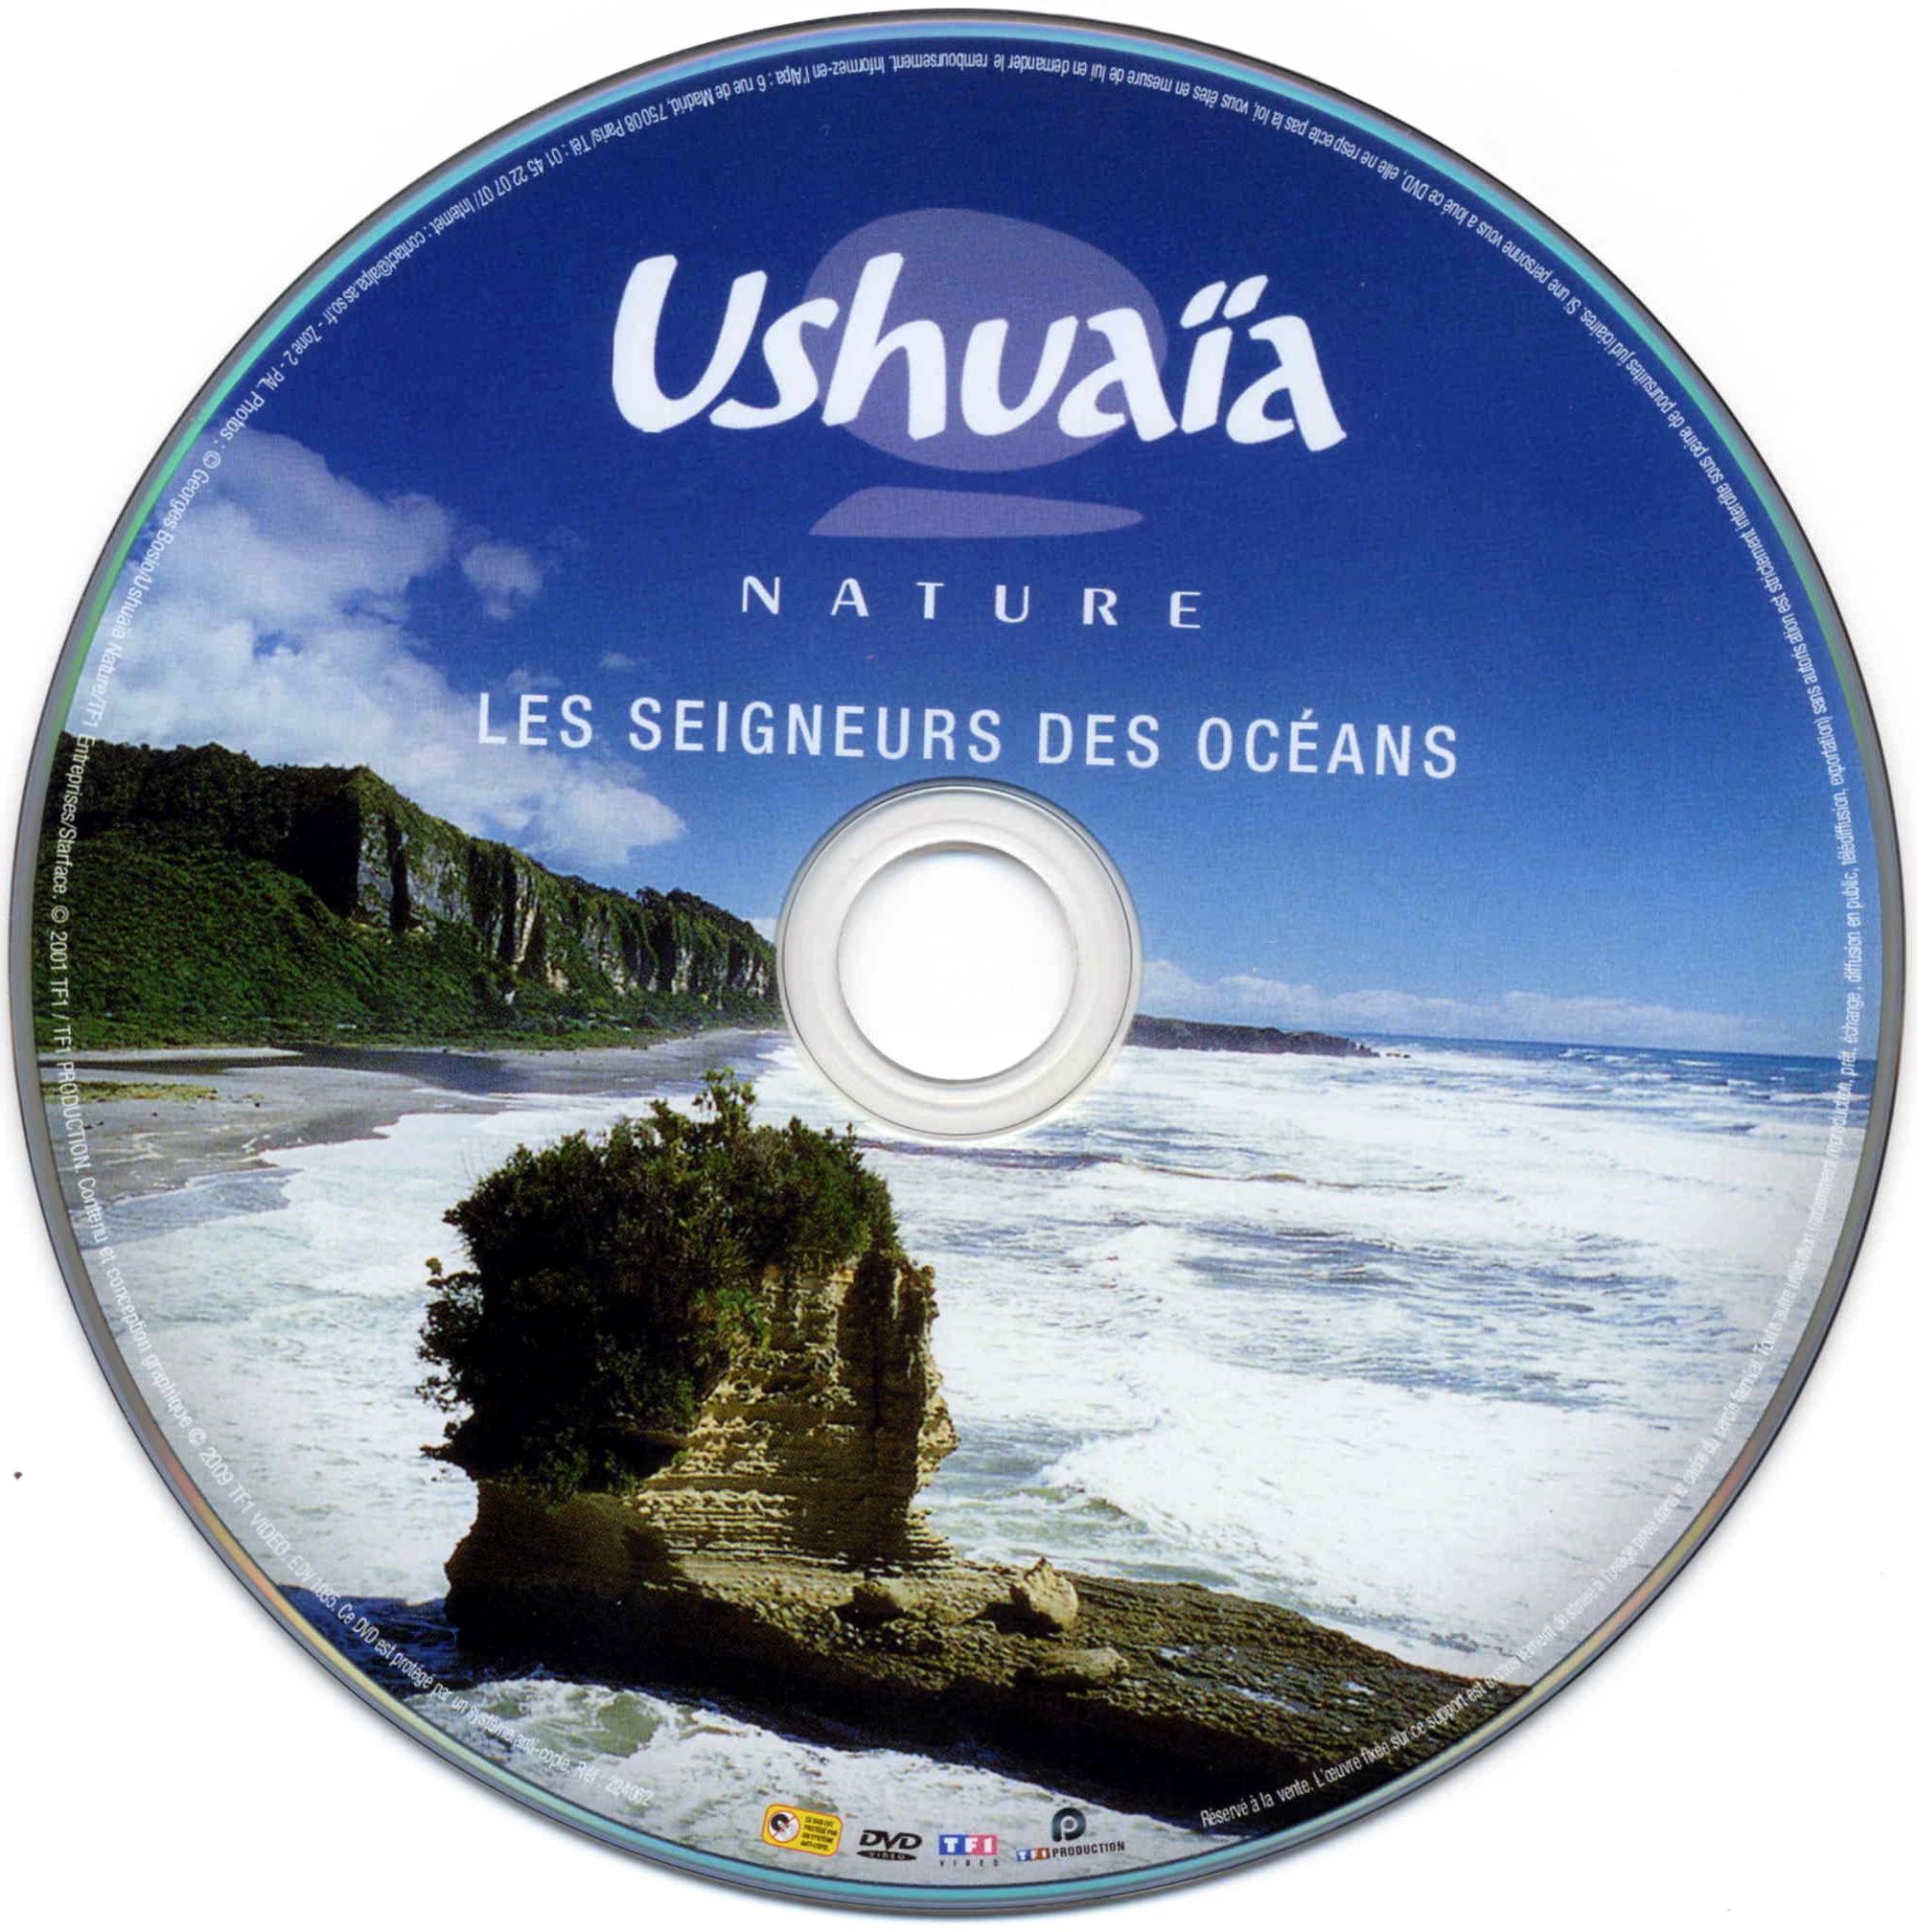 Ushuaia Nature - Les seigneurs des Oceans